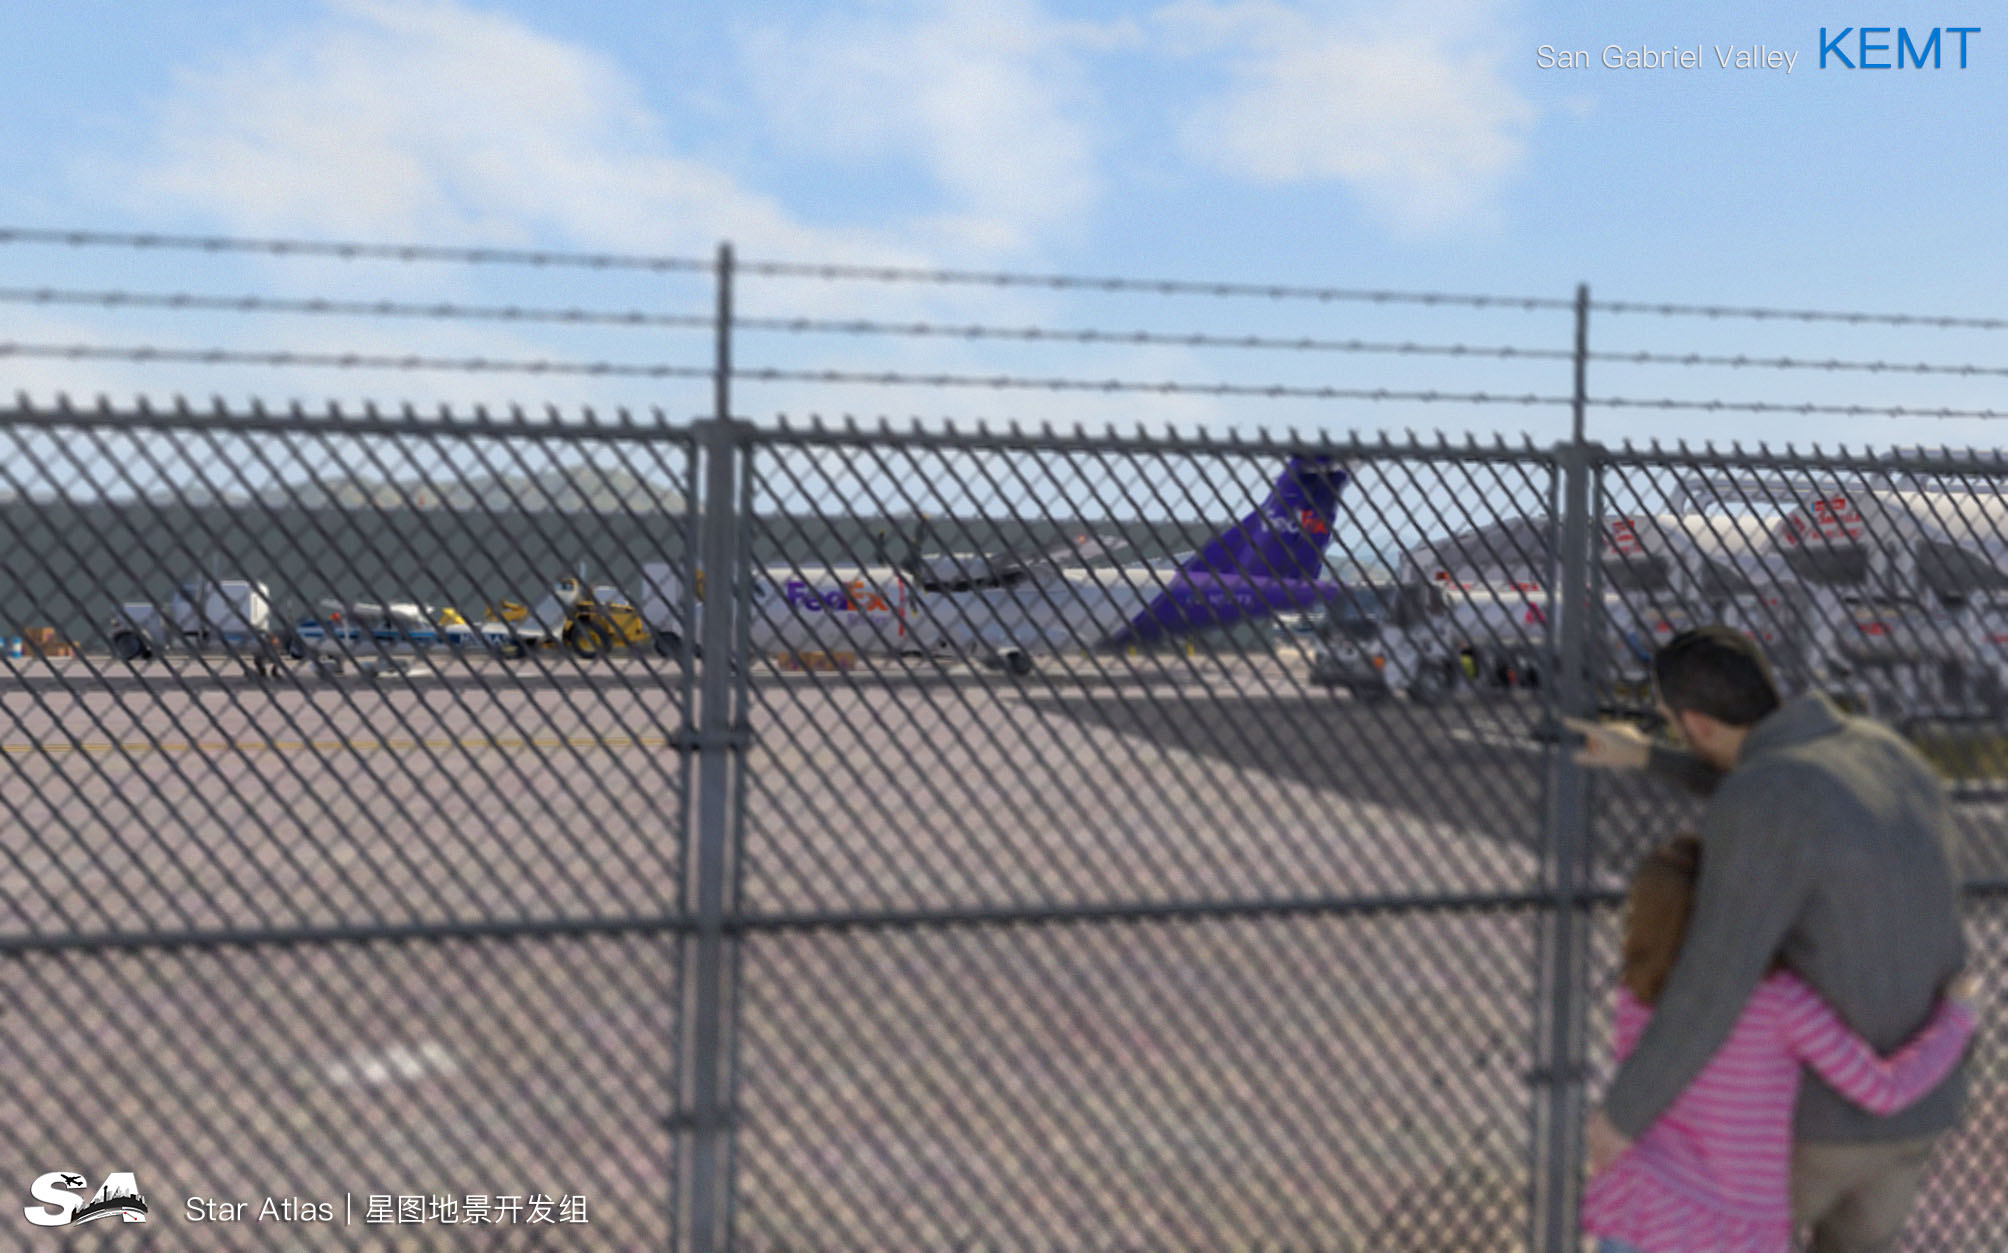 【X-Plane】KEMT-圣盖博谷机场 HD 1.0-5920 